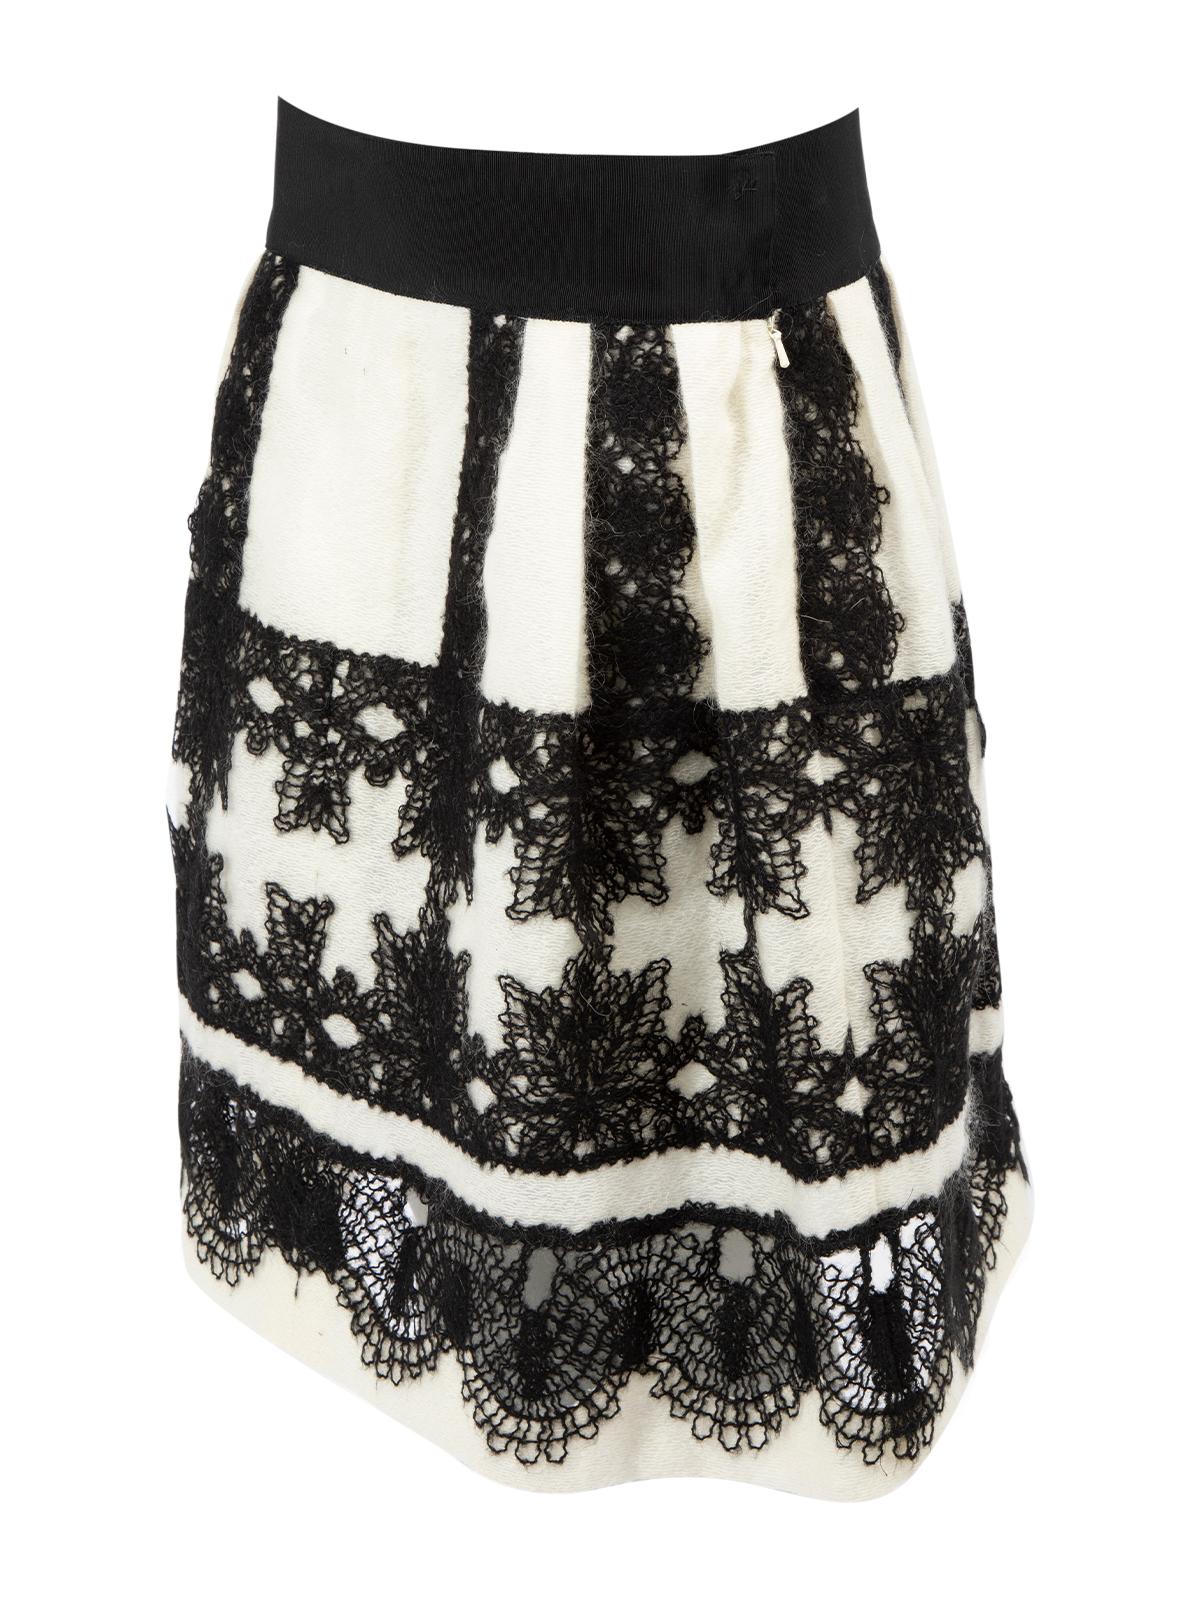 Pre-Loved Alberta Ferretti Women's Black &Cream Crochet Embellished Flared Skirt 1